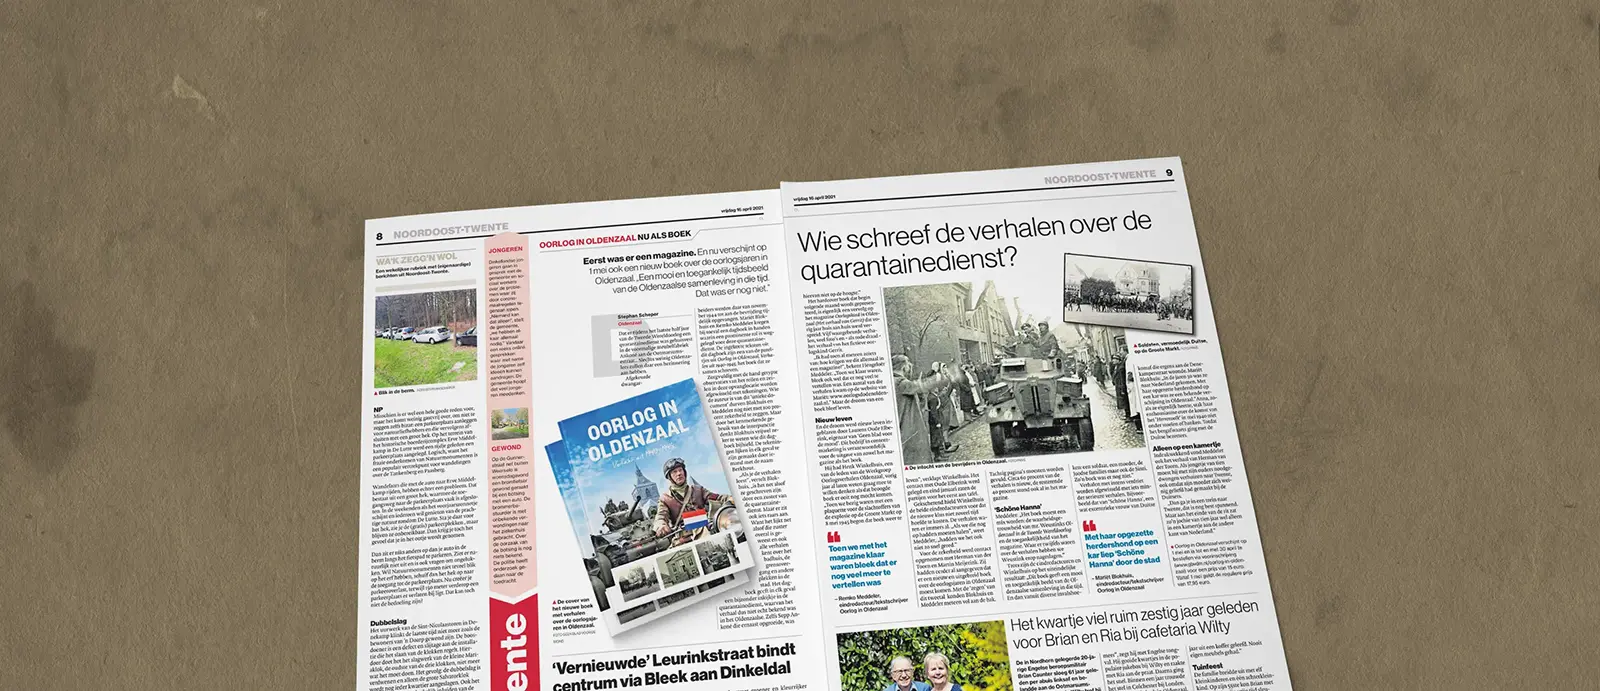 Oorlog in Oldenzaal: een boek vol verhalen die niet verloren mogen gaan